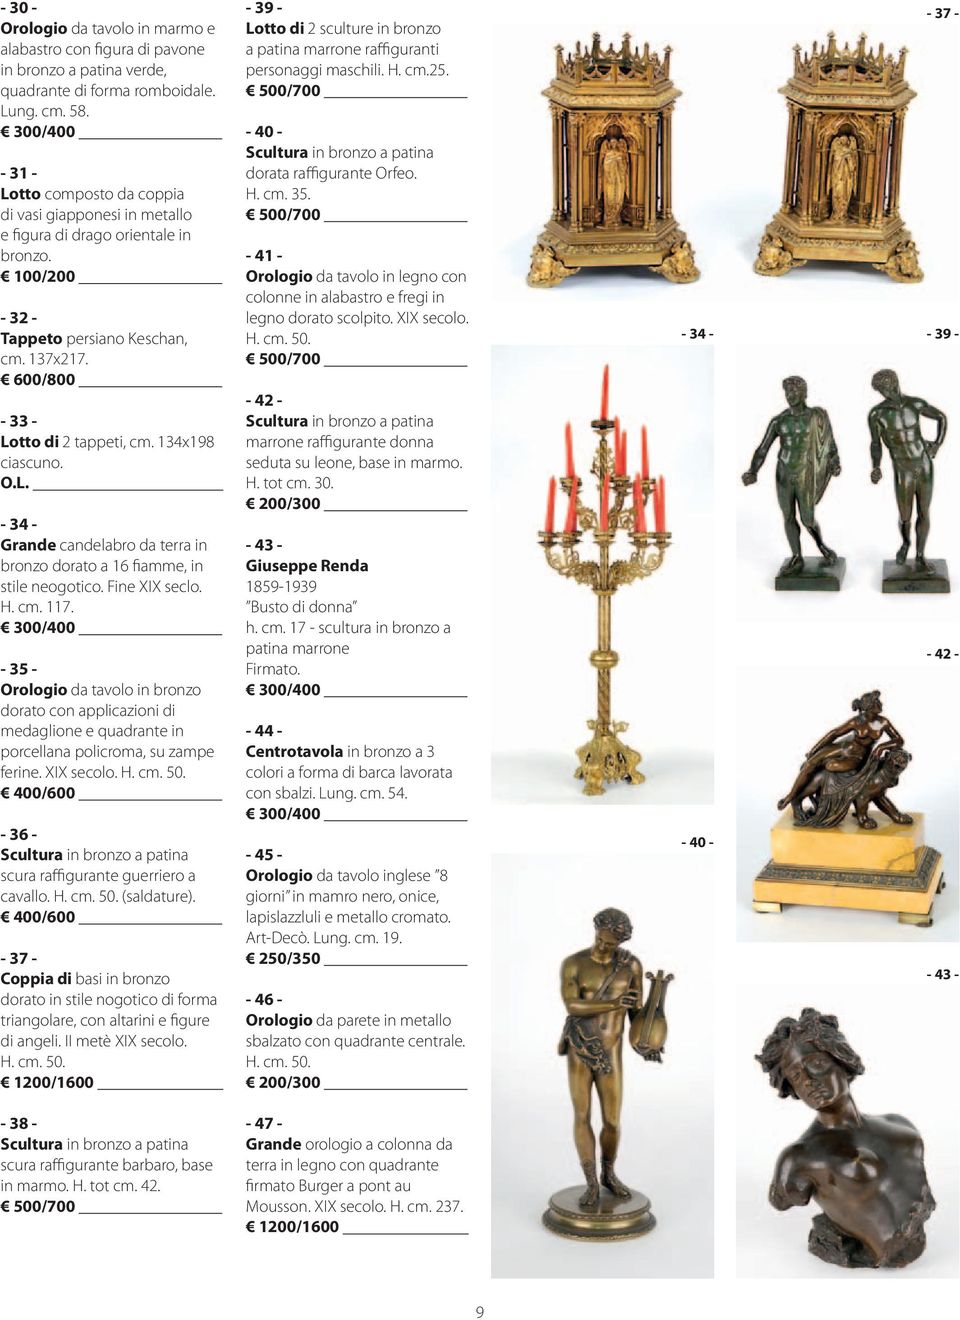 134x198 ciascuno. O.L. - 34 - Grande candelabro da terra in bronzo dorato a 16 fiamme, in stile neogotico. Fine XIX seclo. H. cm. 117.